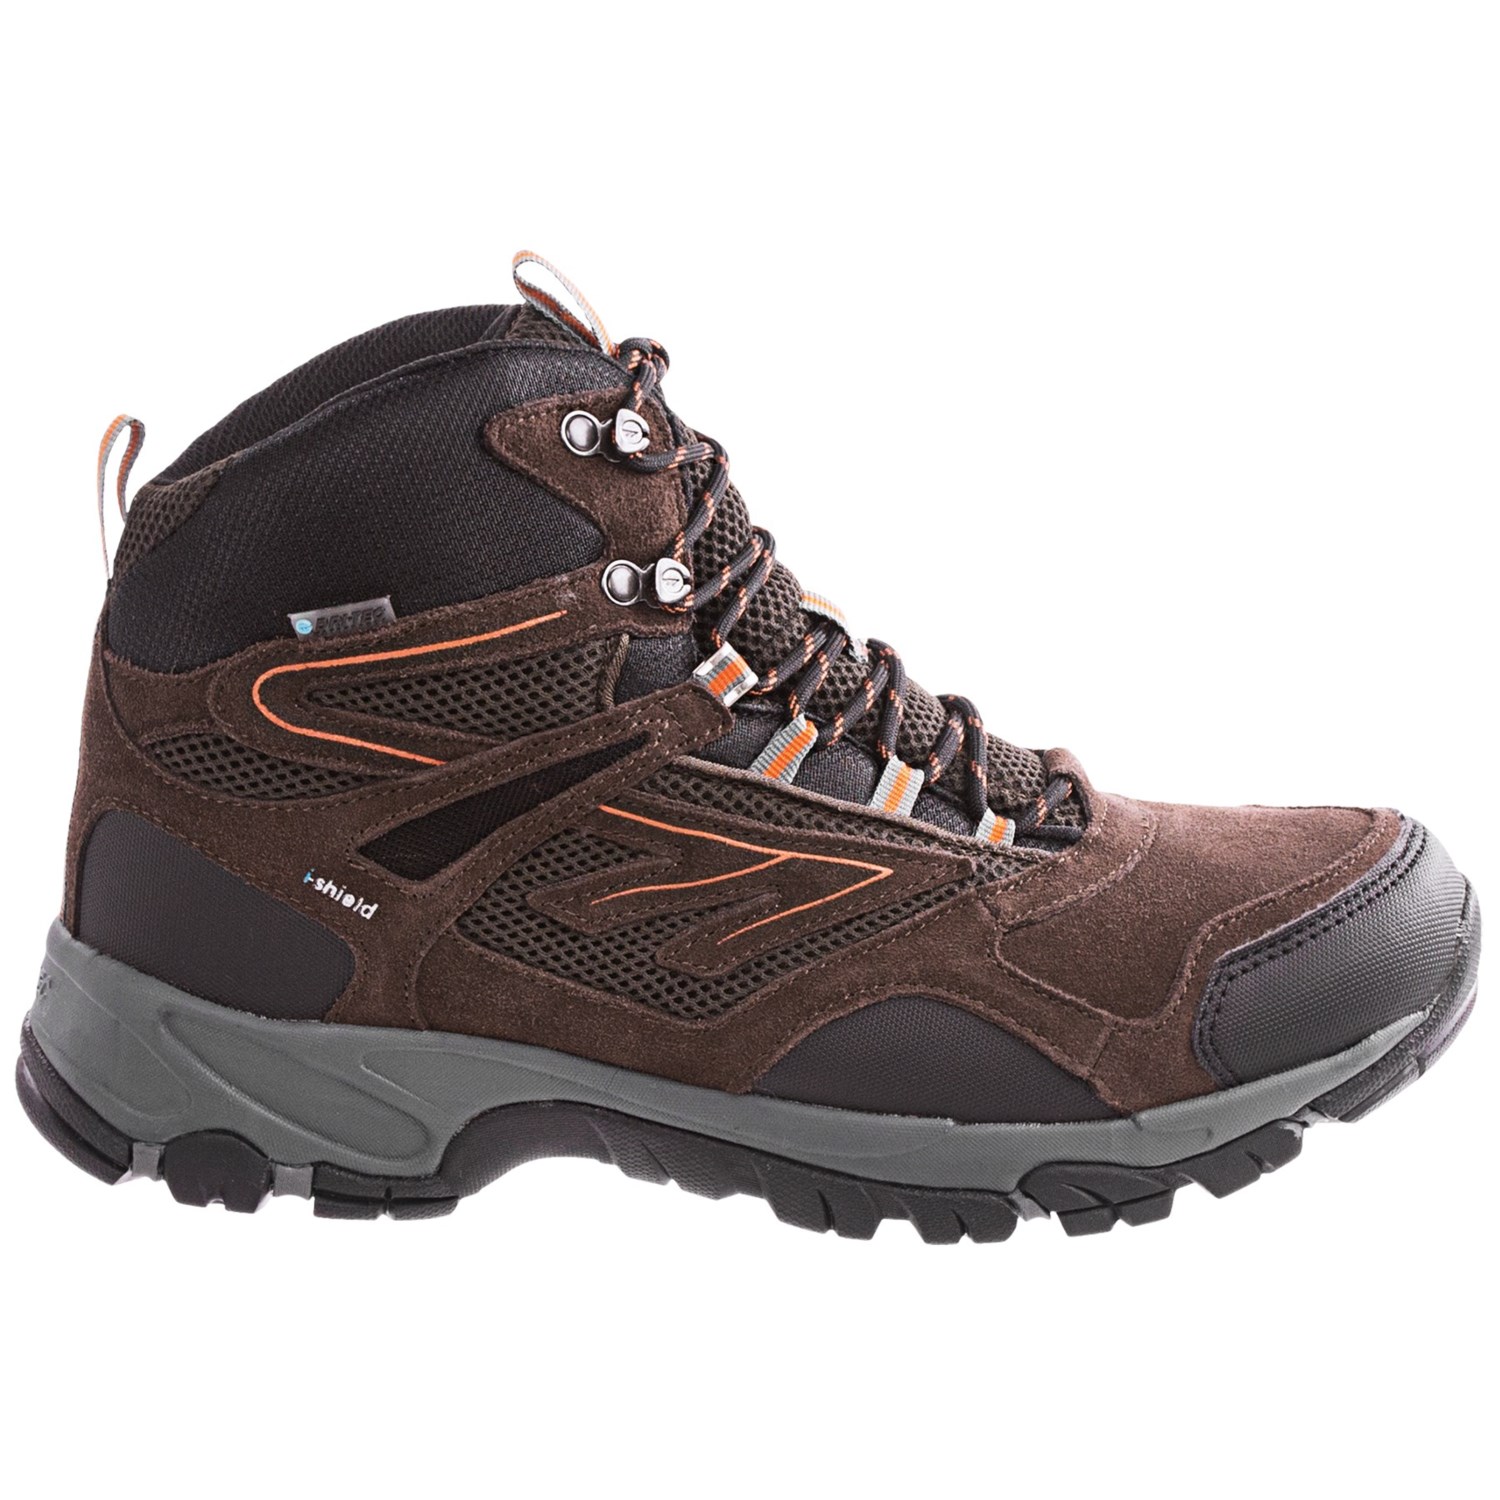 Hi-Tec Altitude Sport Hiking Boots (For Men) 7976X - Save 32%